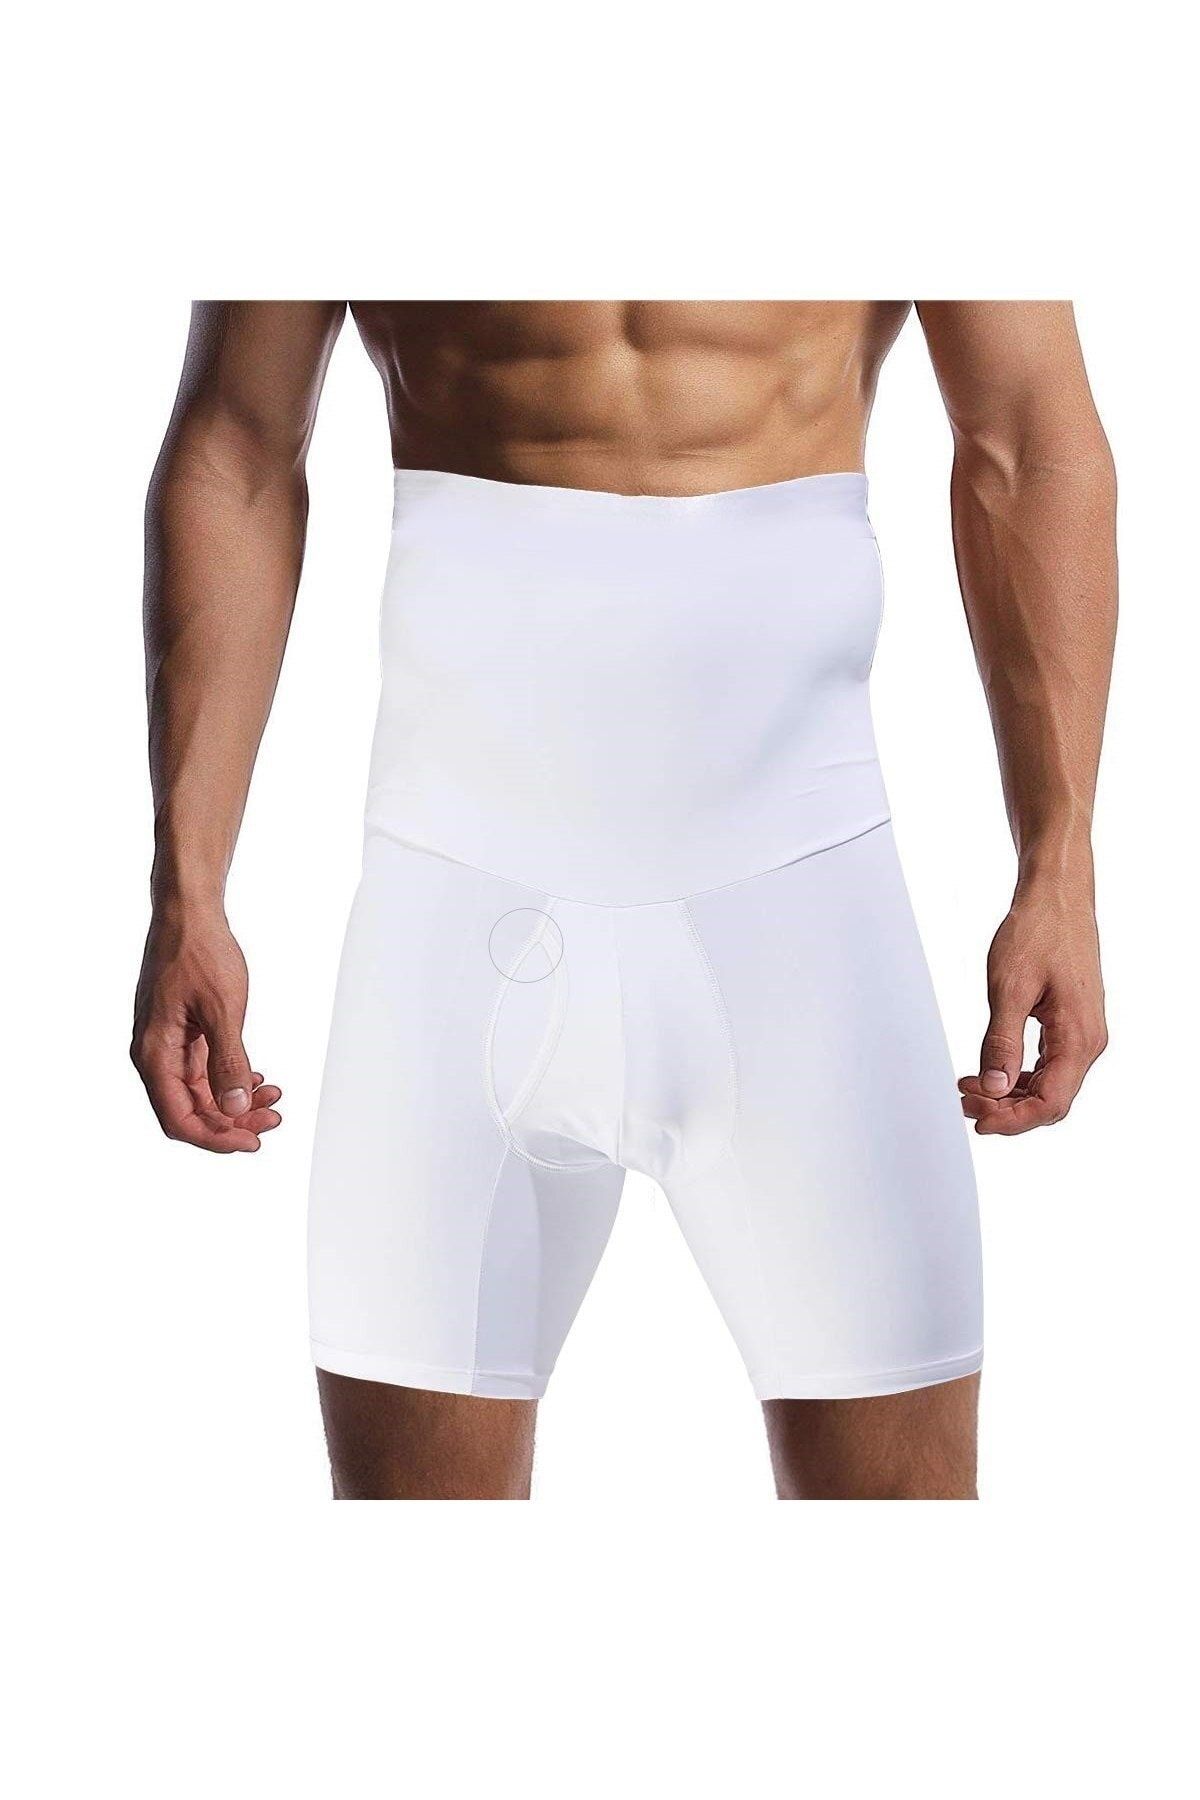 MİSTİRİK Danni Model Bel Ve Göbek Eritici Düzleştirici Spor Korse Boxer Karın Gizleyen Boxer Beyaz Renk